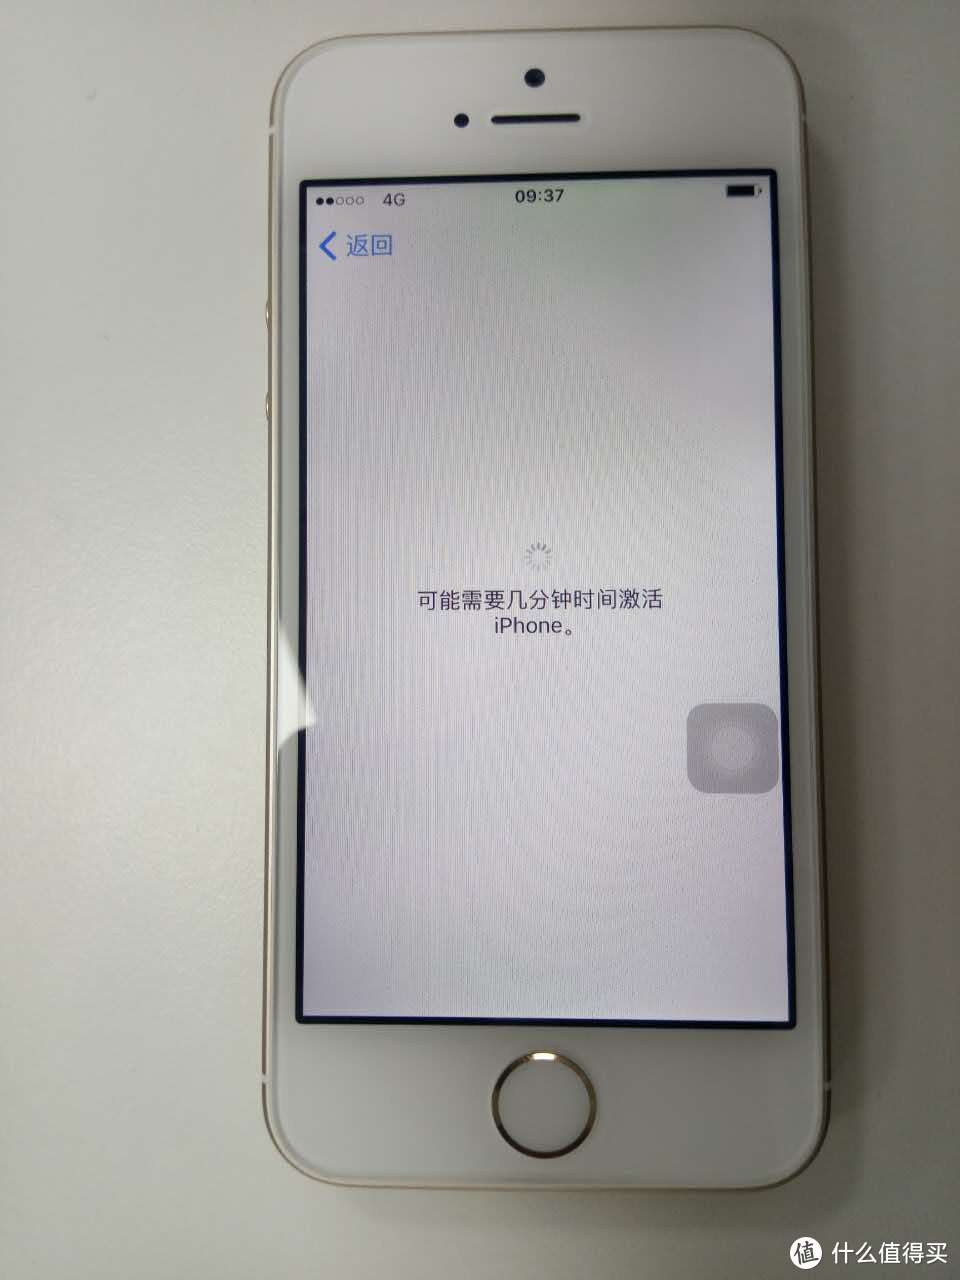 #原创新人#美淘沃尔玛 iPhone SE 32G “翻车经历”